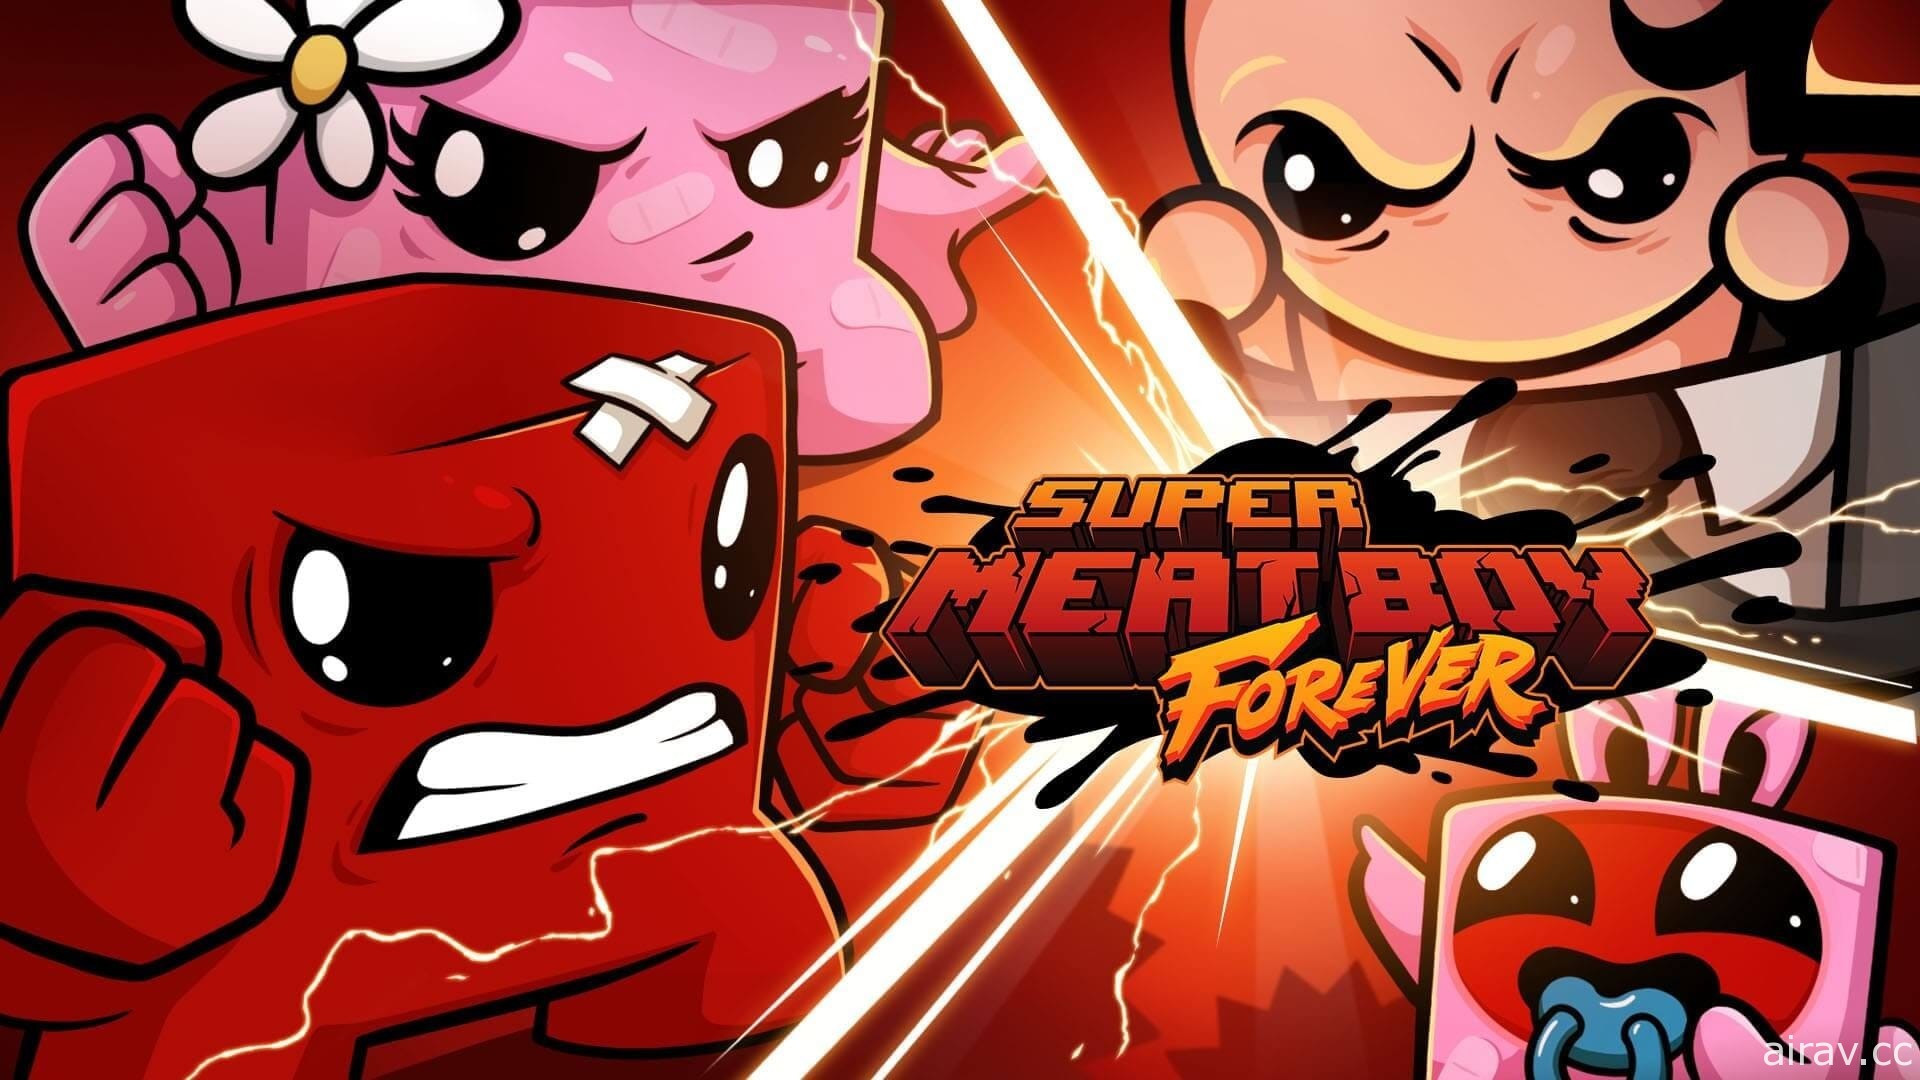 延期許久 《Super Meat Boy Forever》12 月底登陸 Epic Games Store